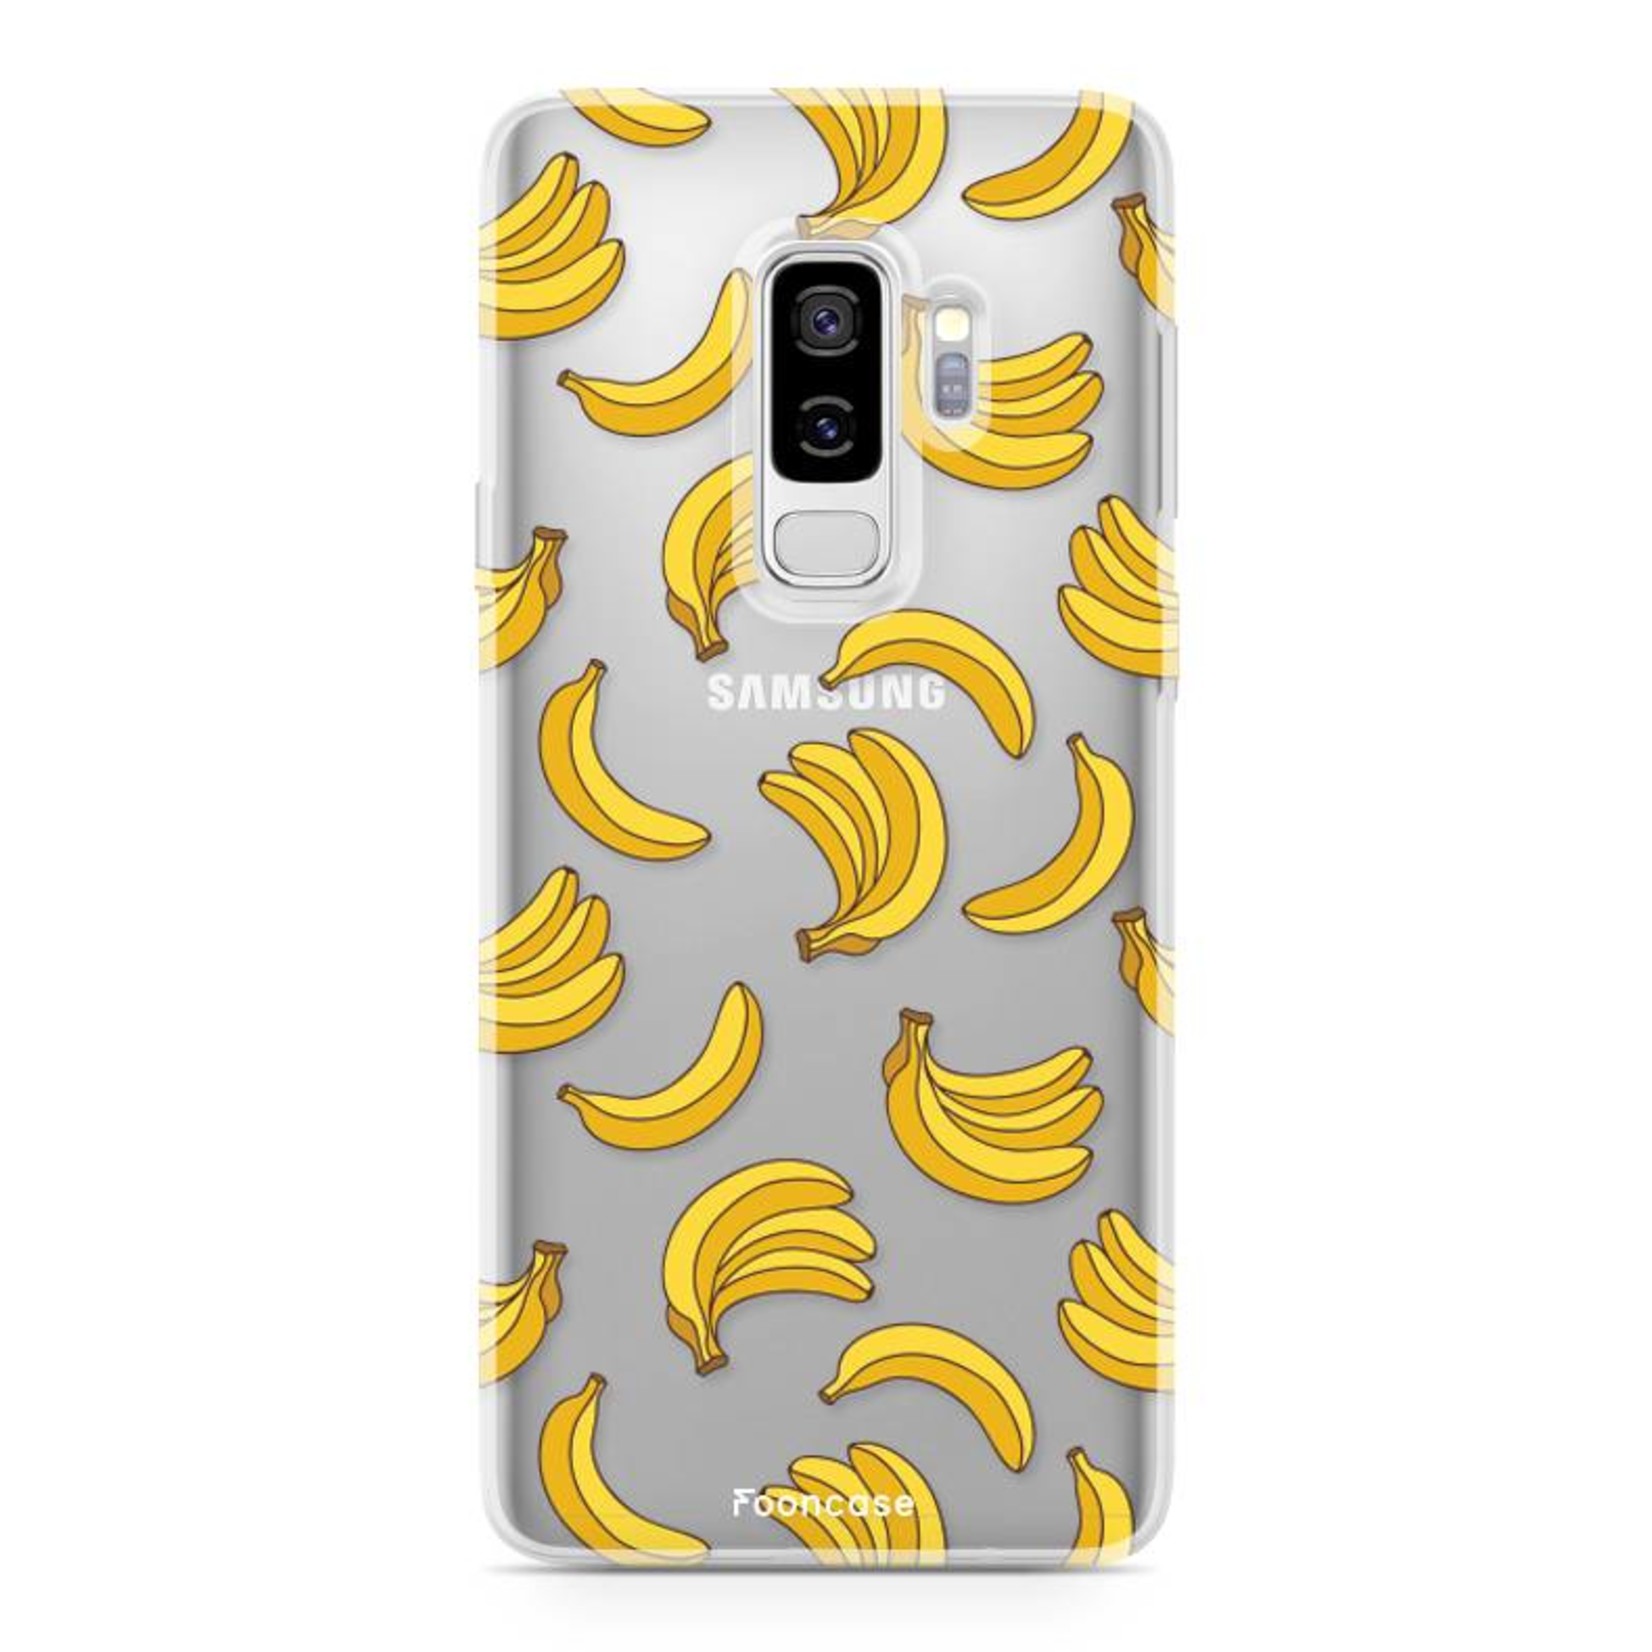 FOONCASE Samsung Galaxy S9 Plus Case - Bananas